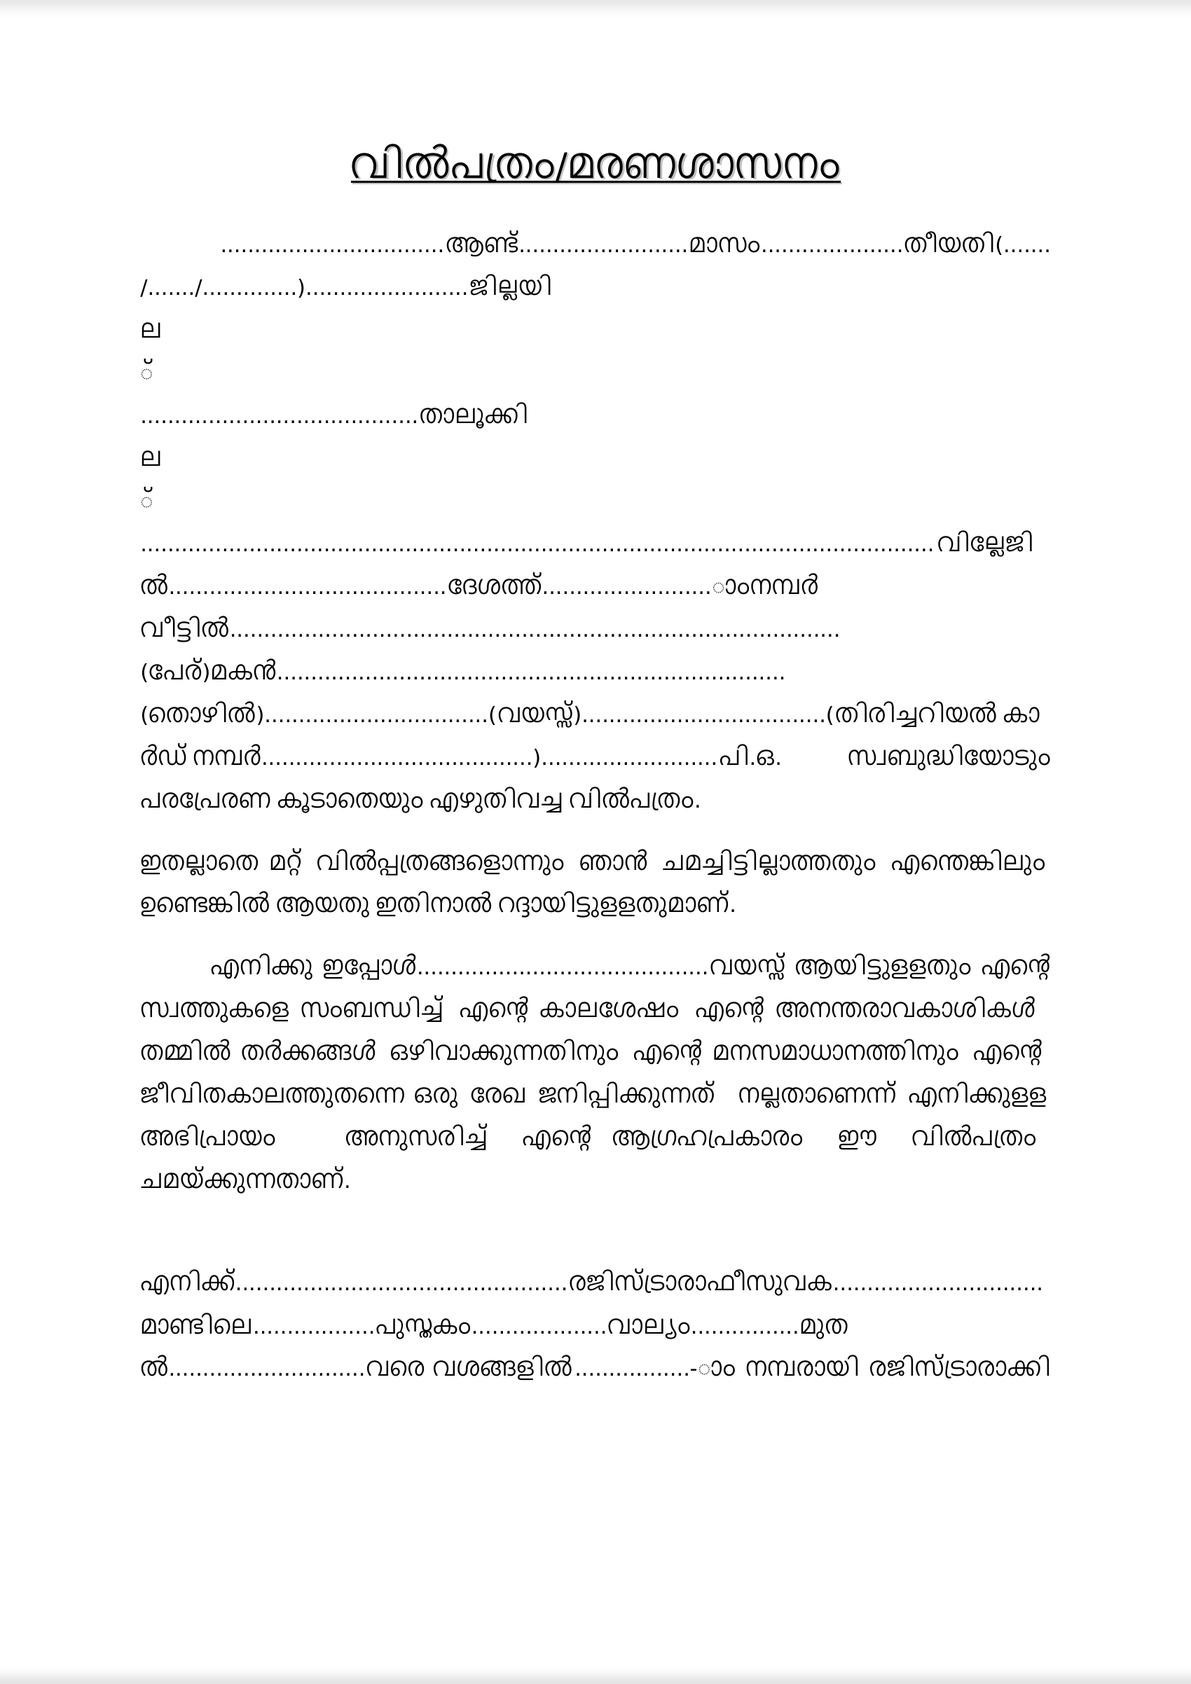 Will deed in malayalam language -0